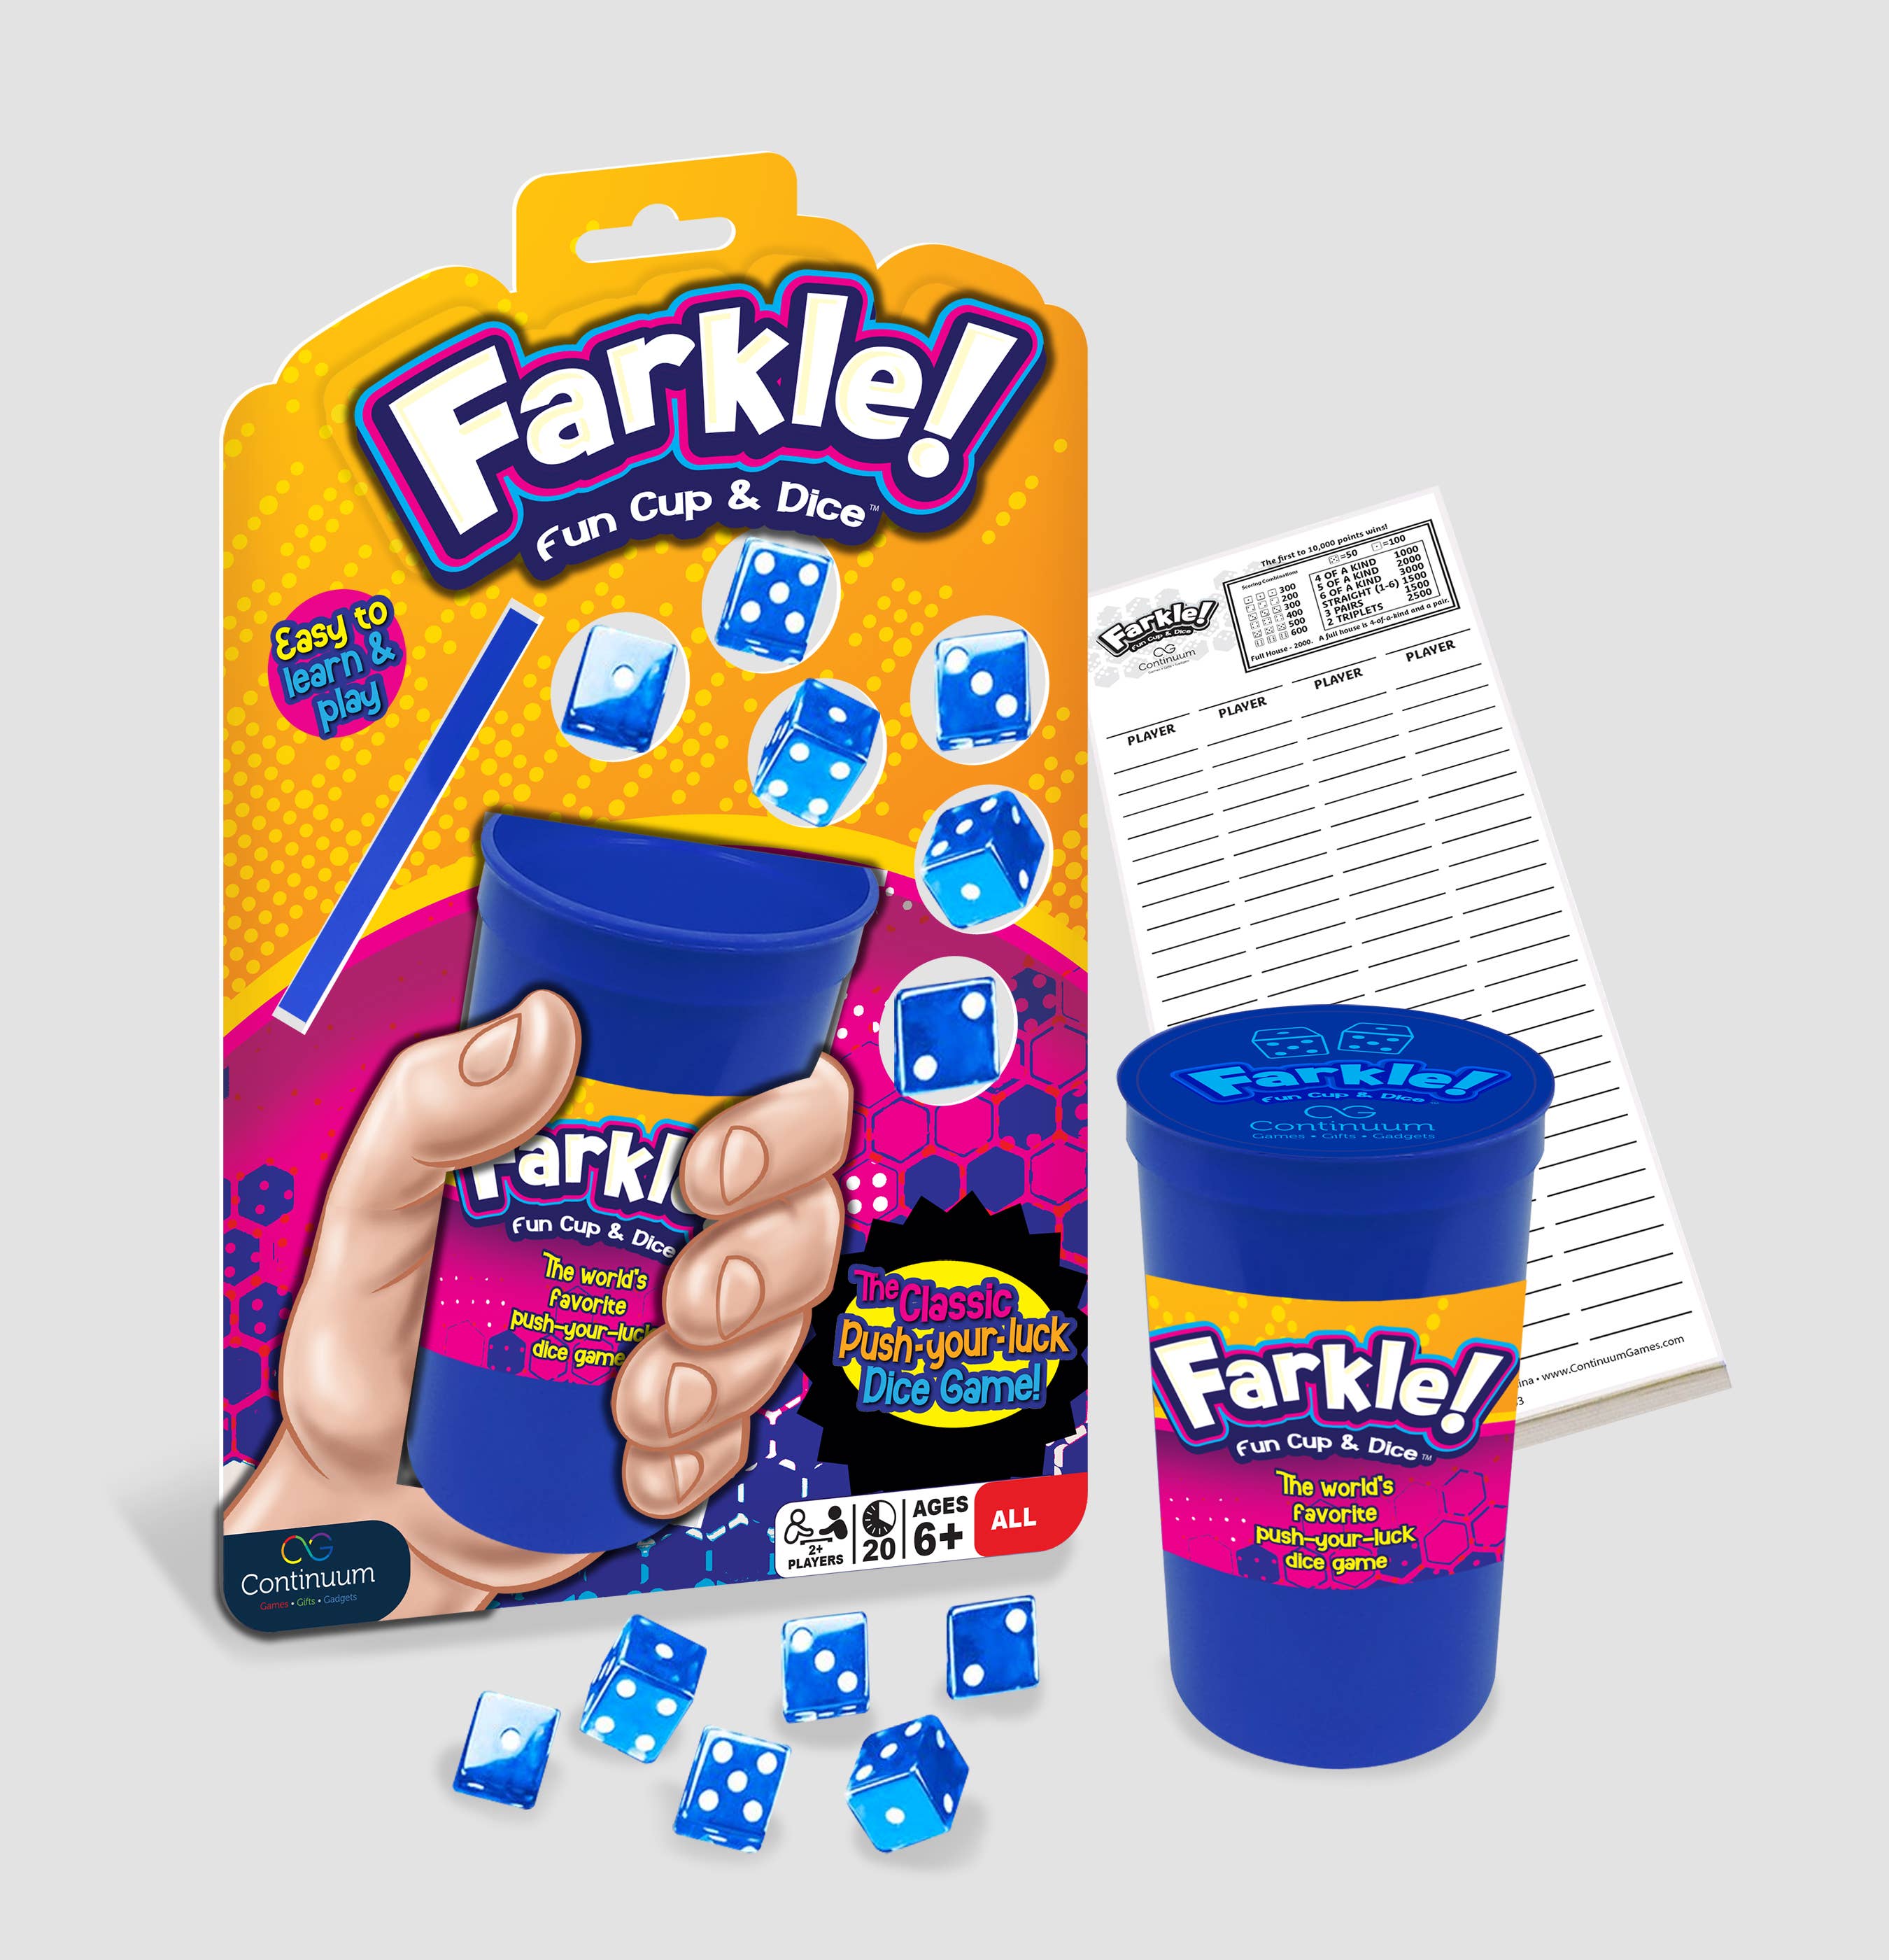 Farkle! Fun Cup & Dice - Bards & Cards